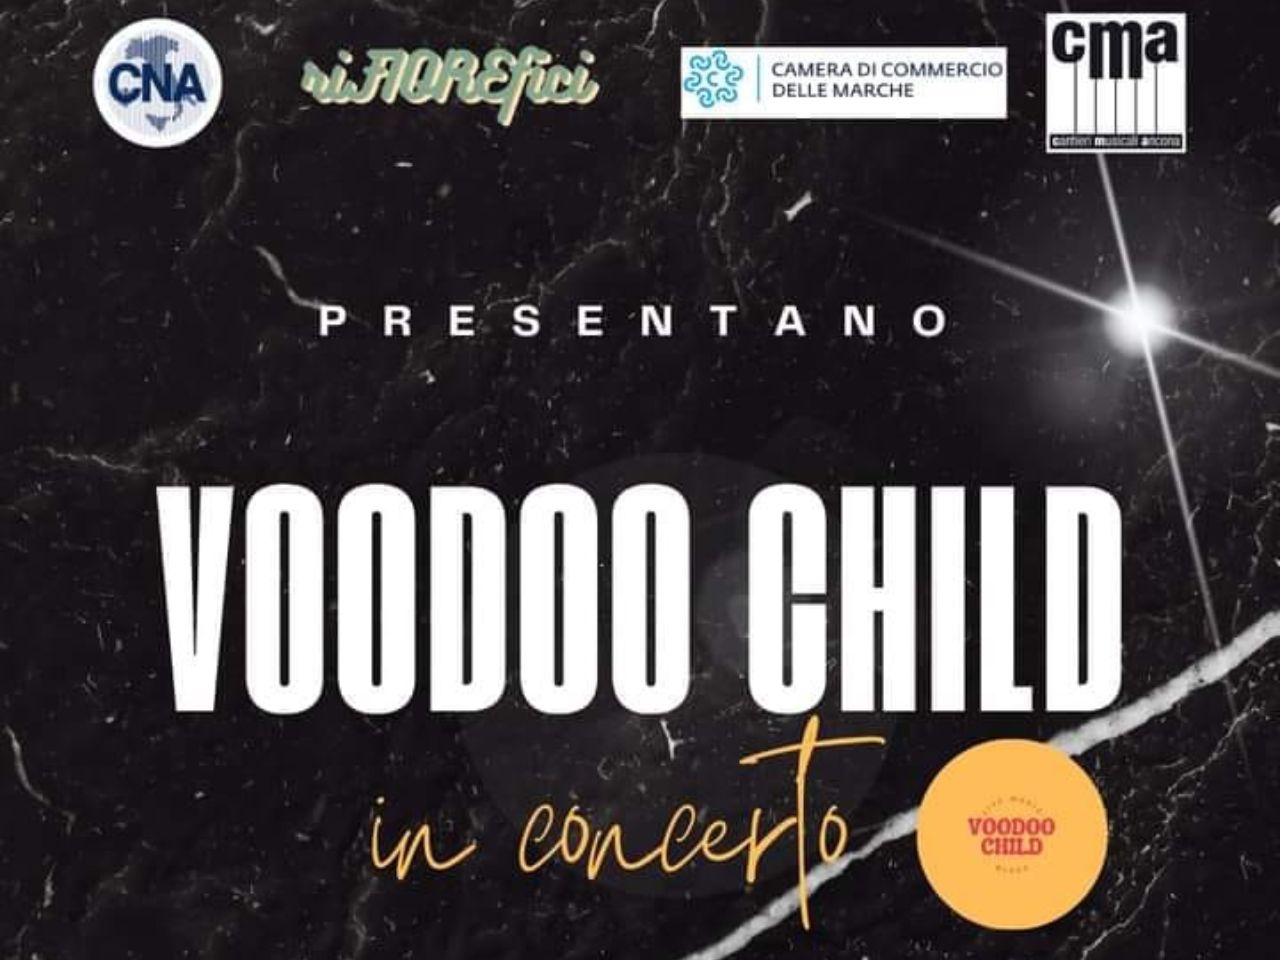 I Voodoo Child ospiti a riFIOREfici. Una iniziativa CNA e CMA per l’8 dicembre